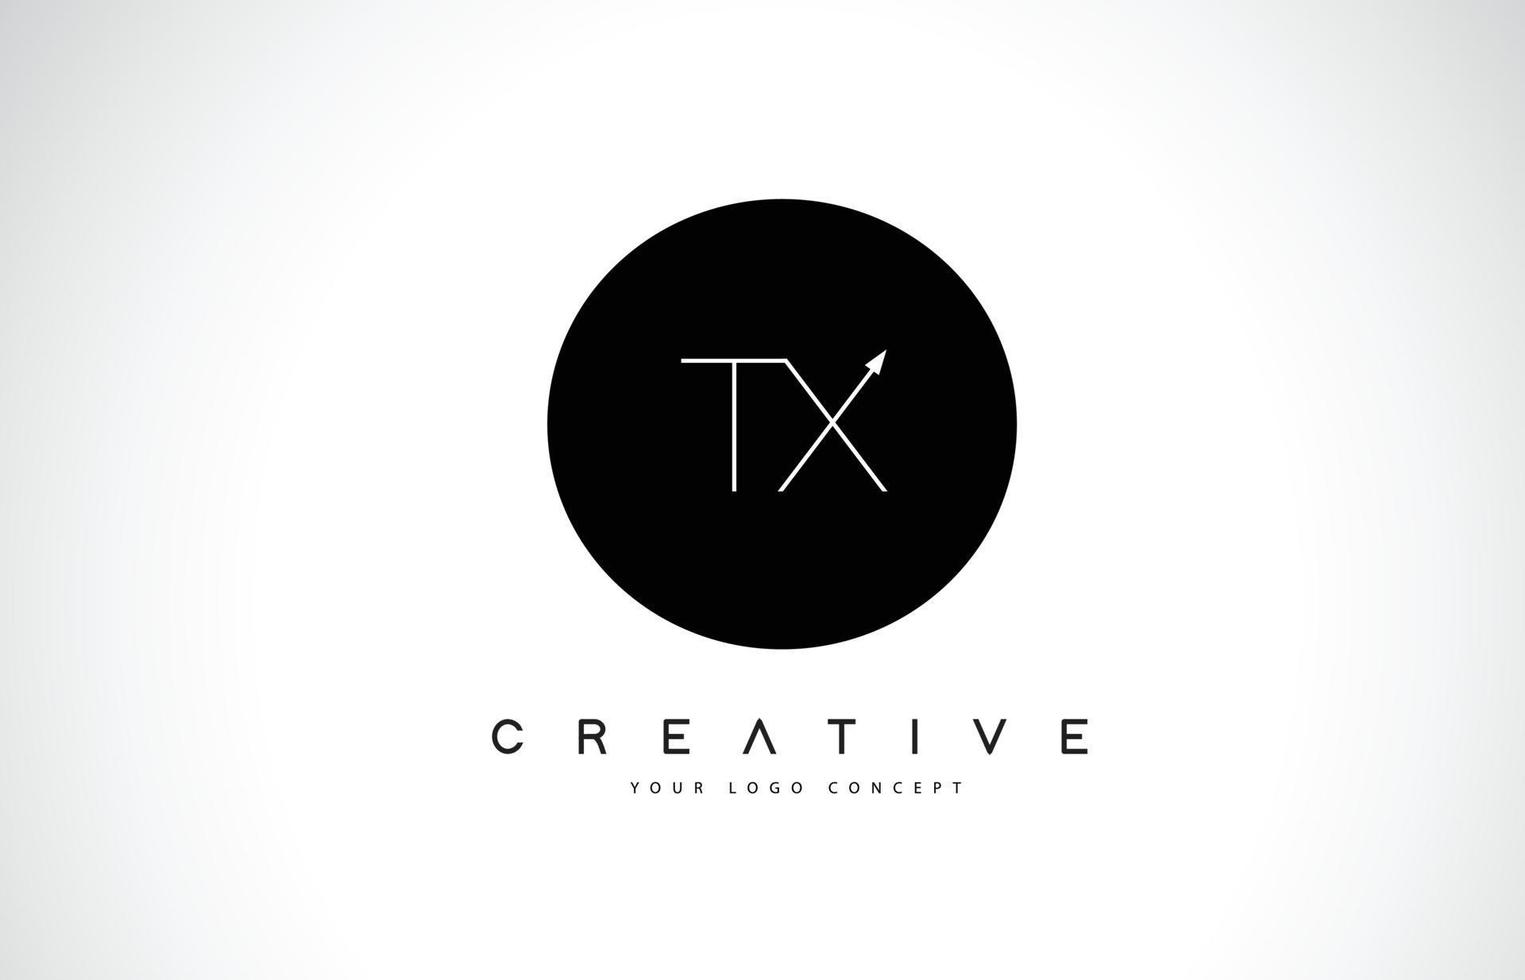 Diseño de logotipo tx tx con vector de letra de texto creativo en blanco y negro.